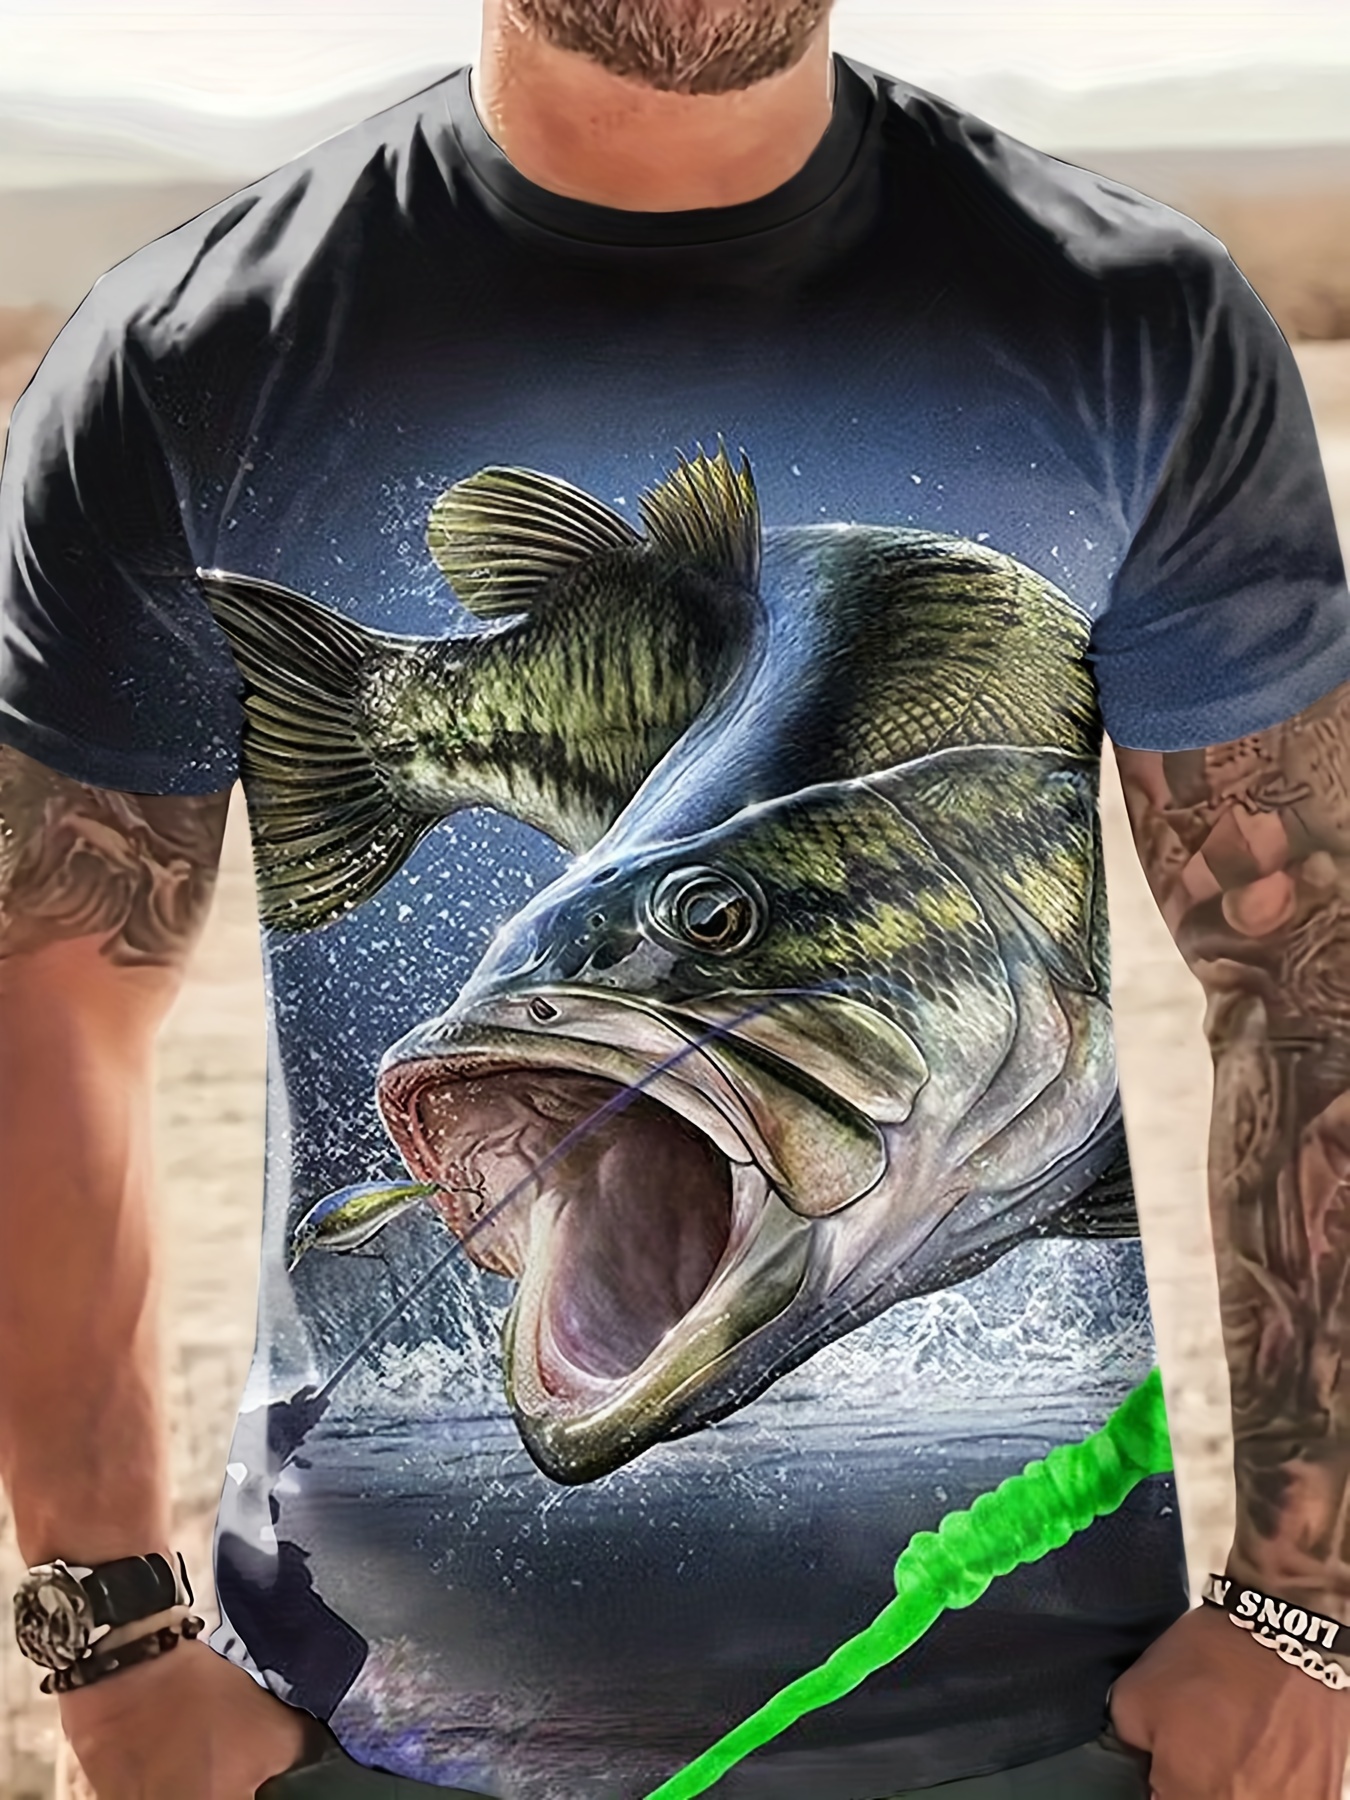 Fishing Shirt - Fishing Is Like Cool Fishing Tee' Men's T-Shirt